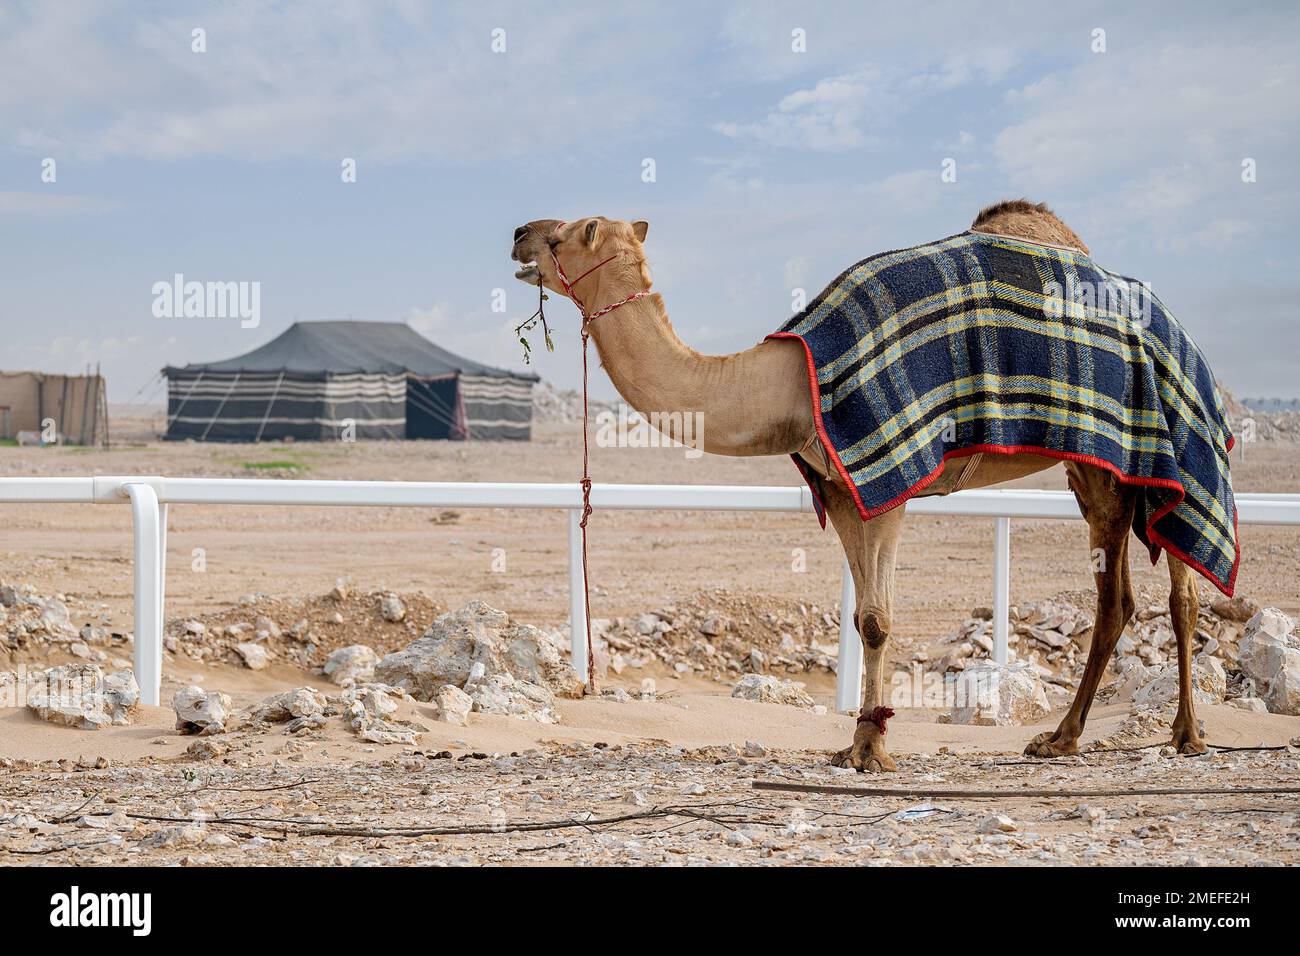 Camel in desert with Arab Traditional Tent. Khaima in Desert Stock Photo